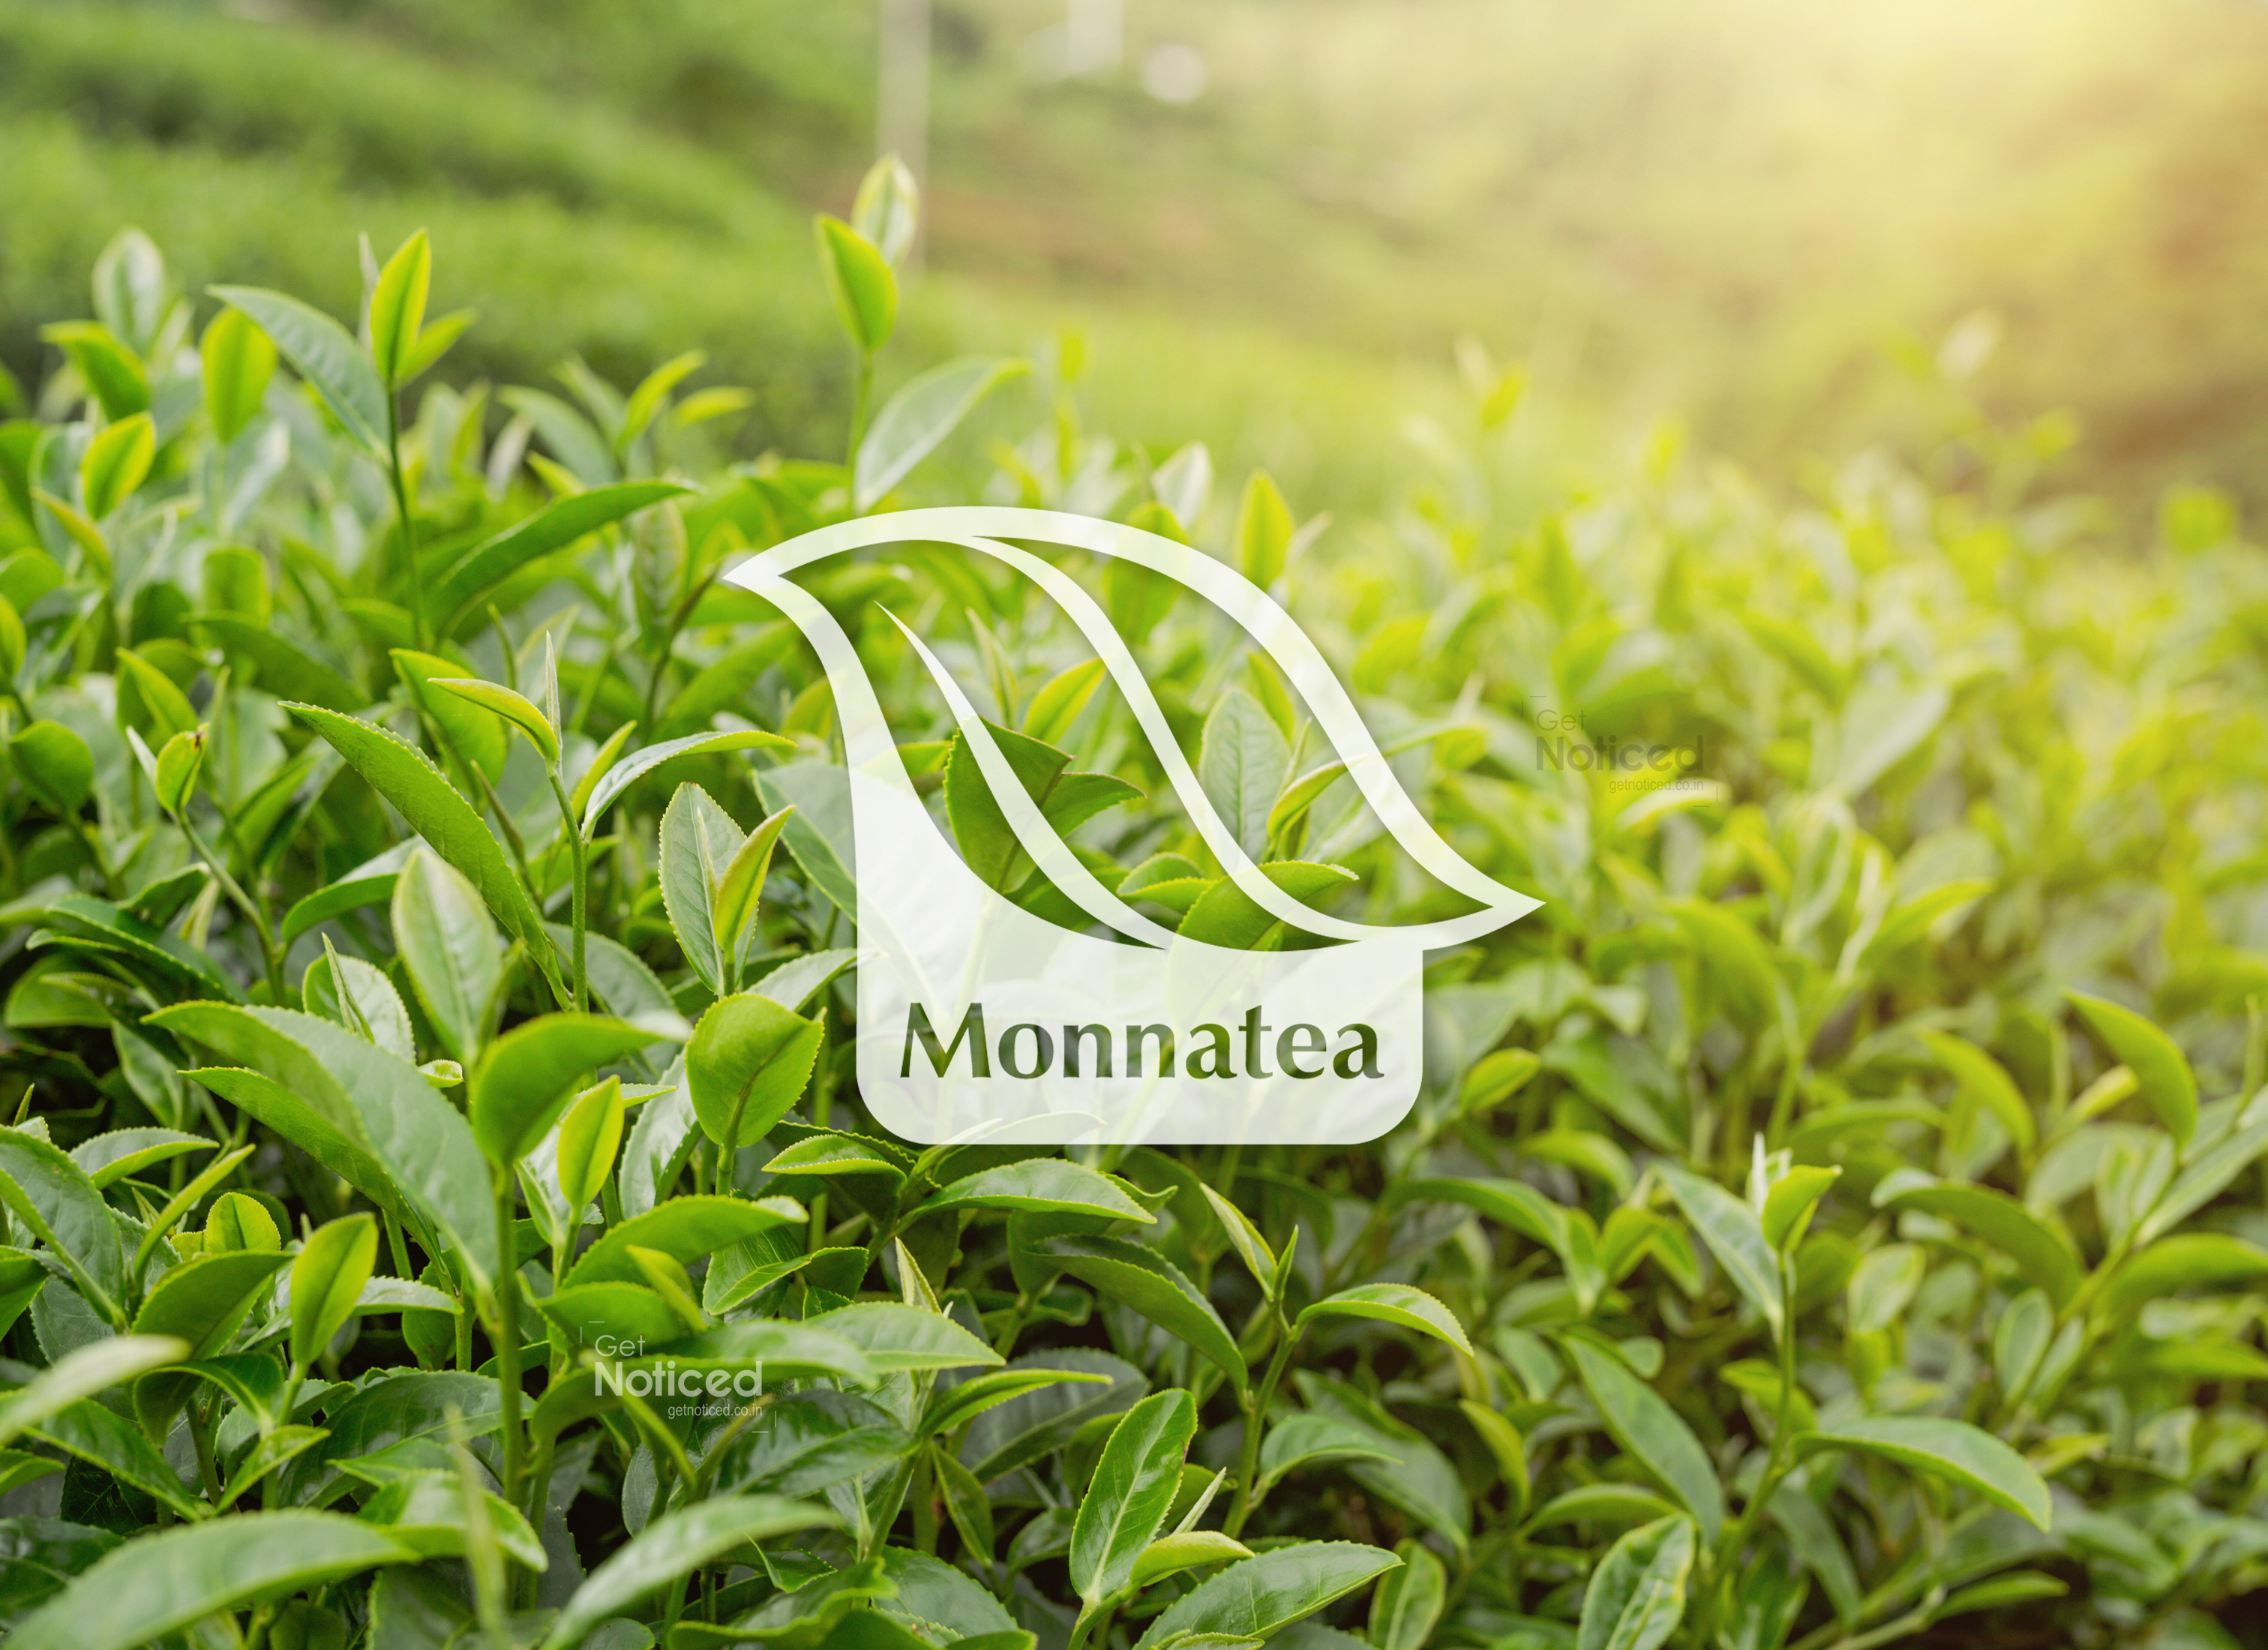 Monnatea Logo Design